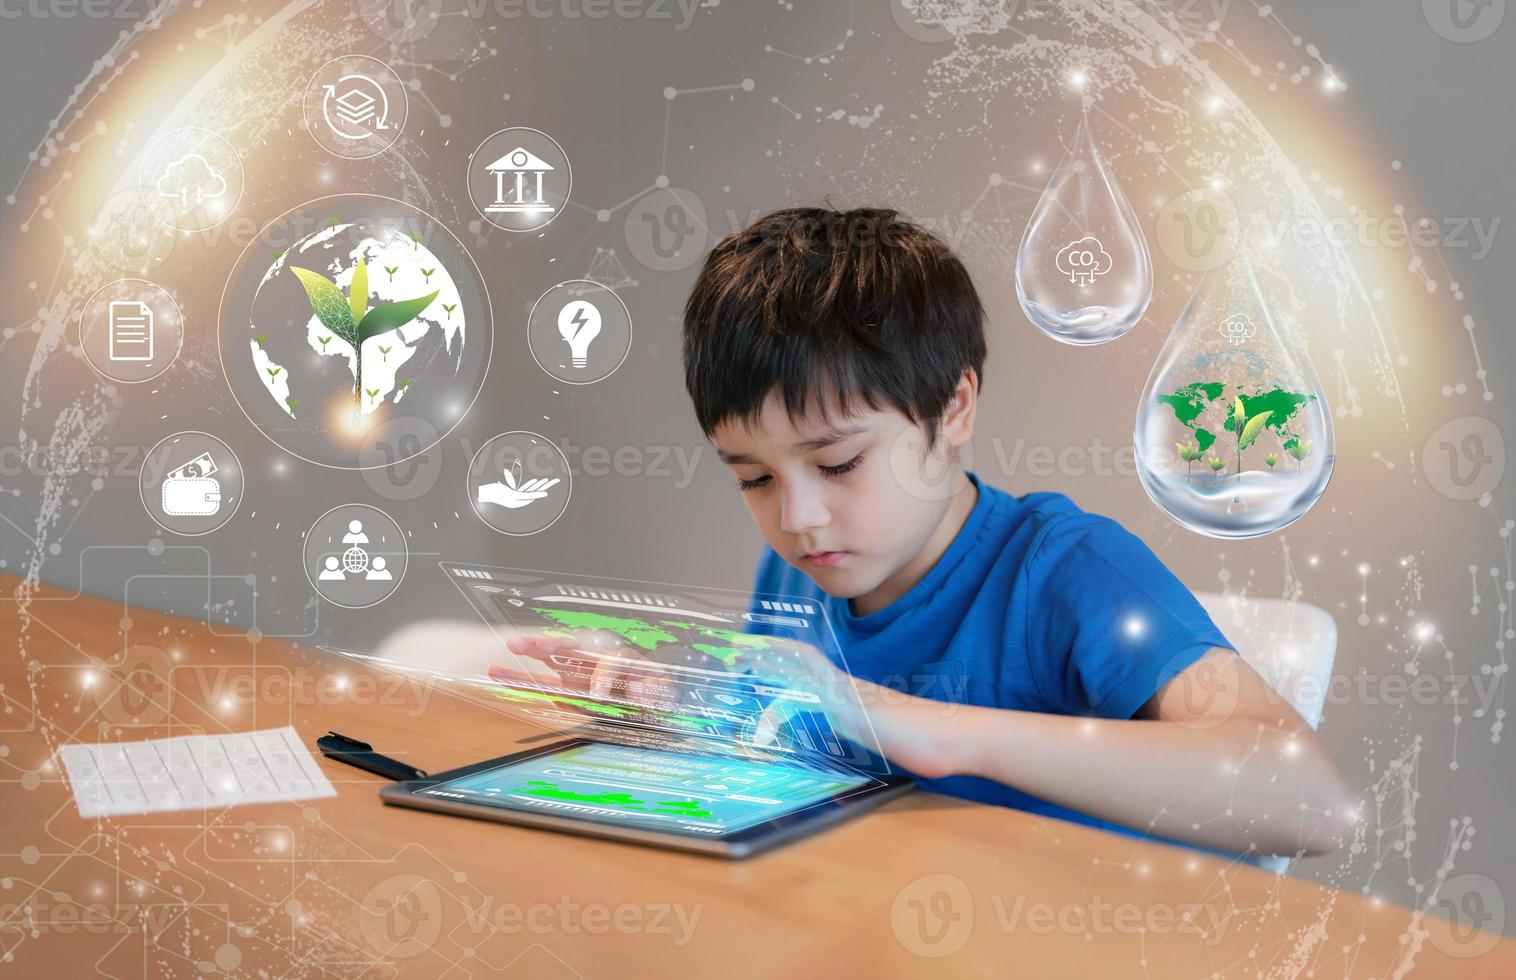 technologie de l'éducation, enfant utilisant une tablette recherche sur internet sur la population mondiale, écologie, environnement, écolier faisant l'apprentissage en ligne, géographie avec feuille de croissance à double exposition sur la carte du globe photo